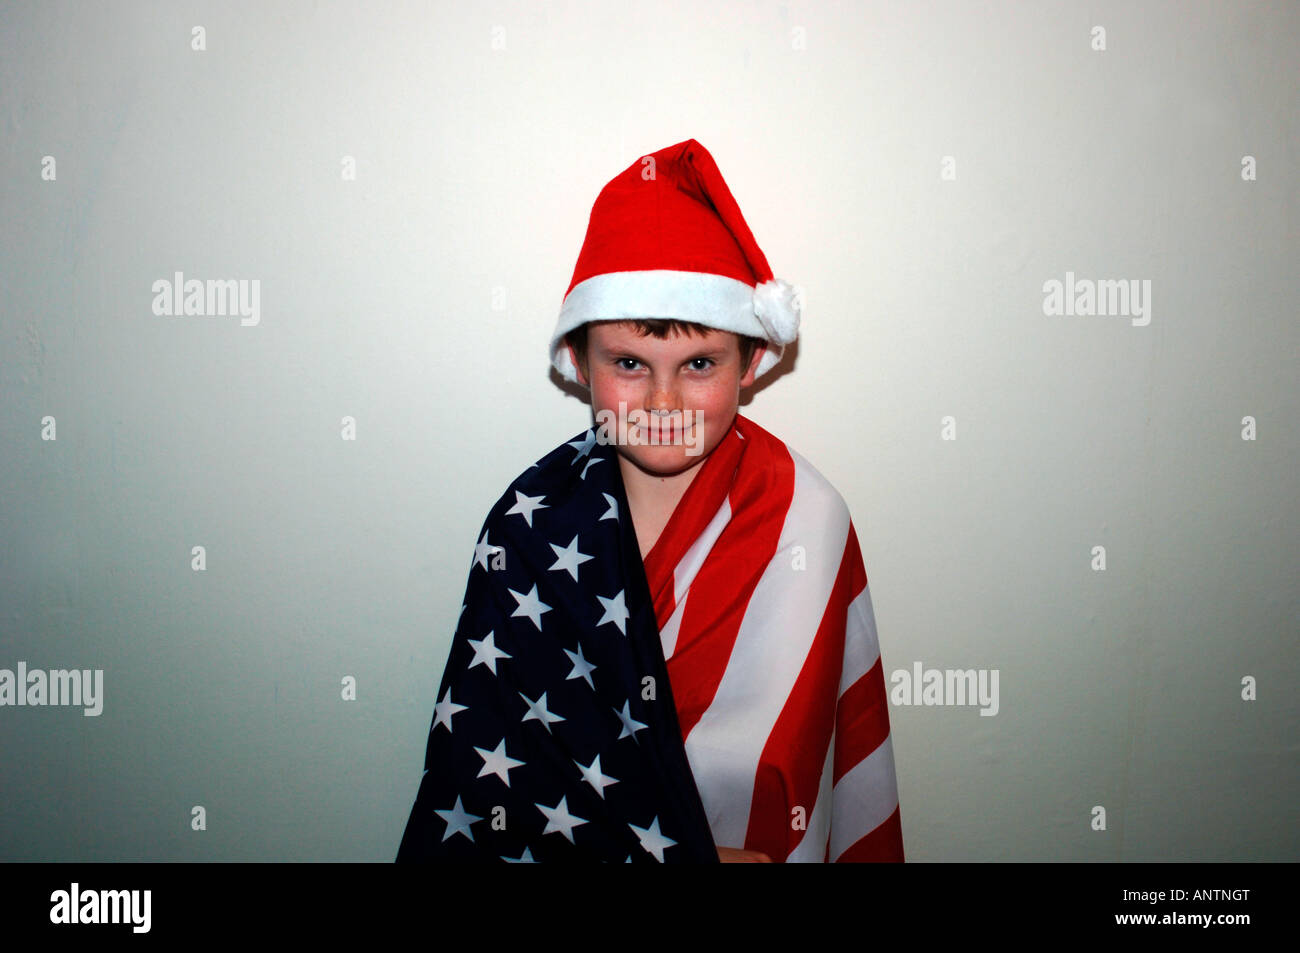 Ein 13 Jahre alter Junge, eingehüllt In den USA-Stars & Streifen kennzeichnen & trägt ein rotes & weiße Nikolausmütze. Stockfoto